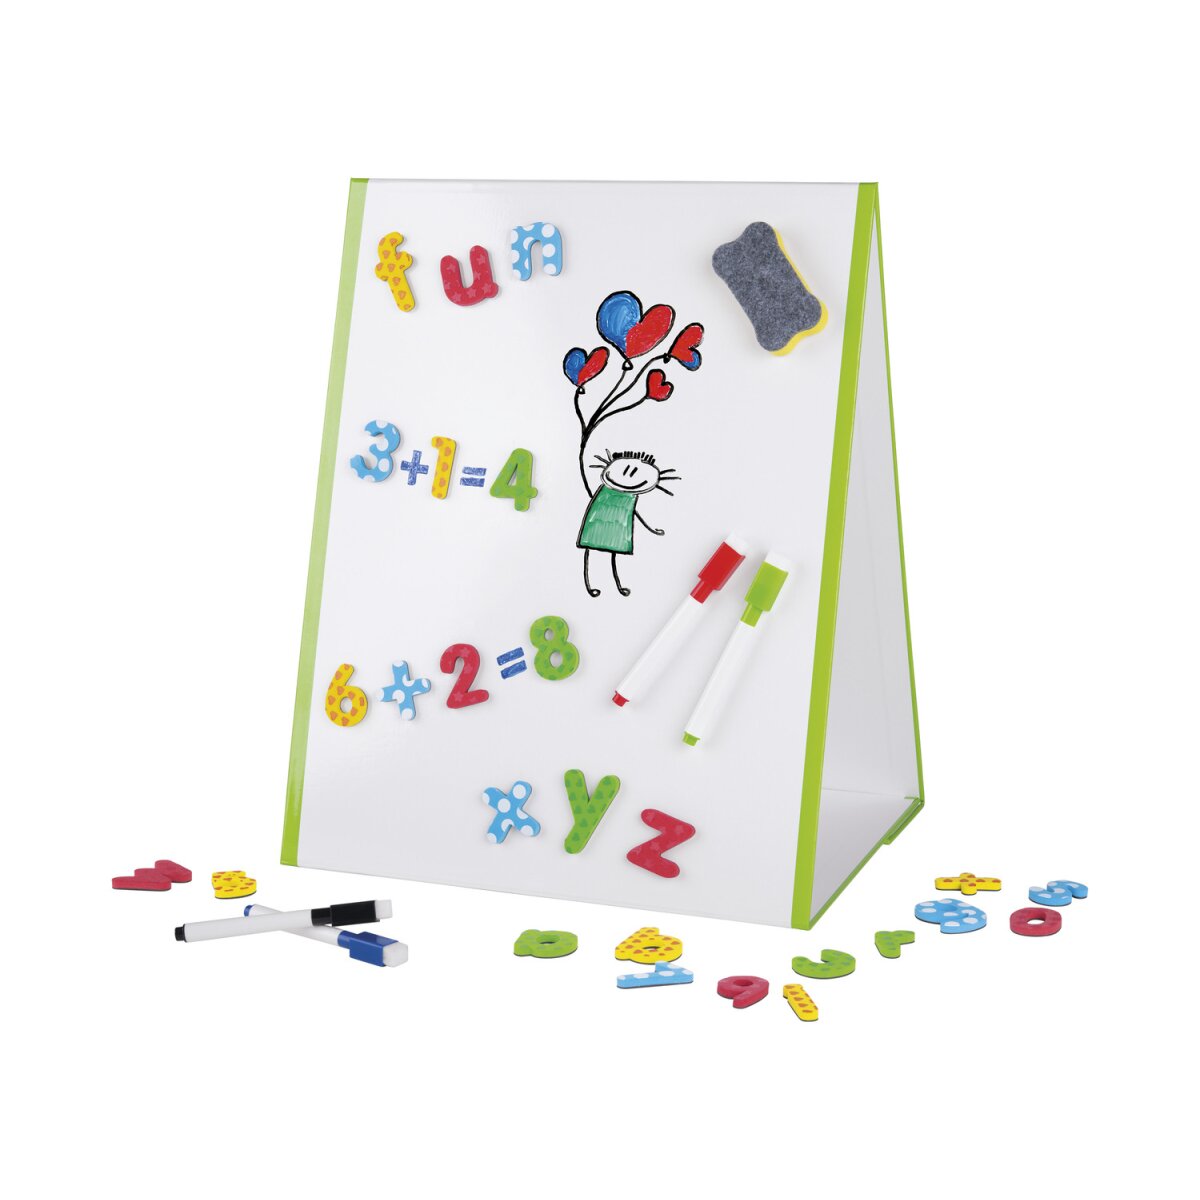 UNITED OFFICE® Kinder Whiteboard, 47-teilig, magnetisch - B-Ware neuwertig,  8,99 €